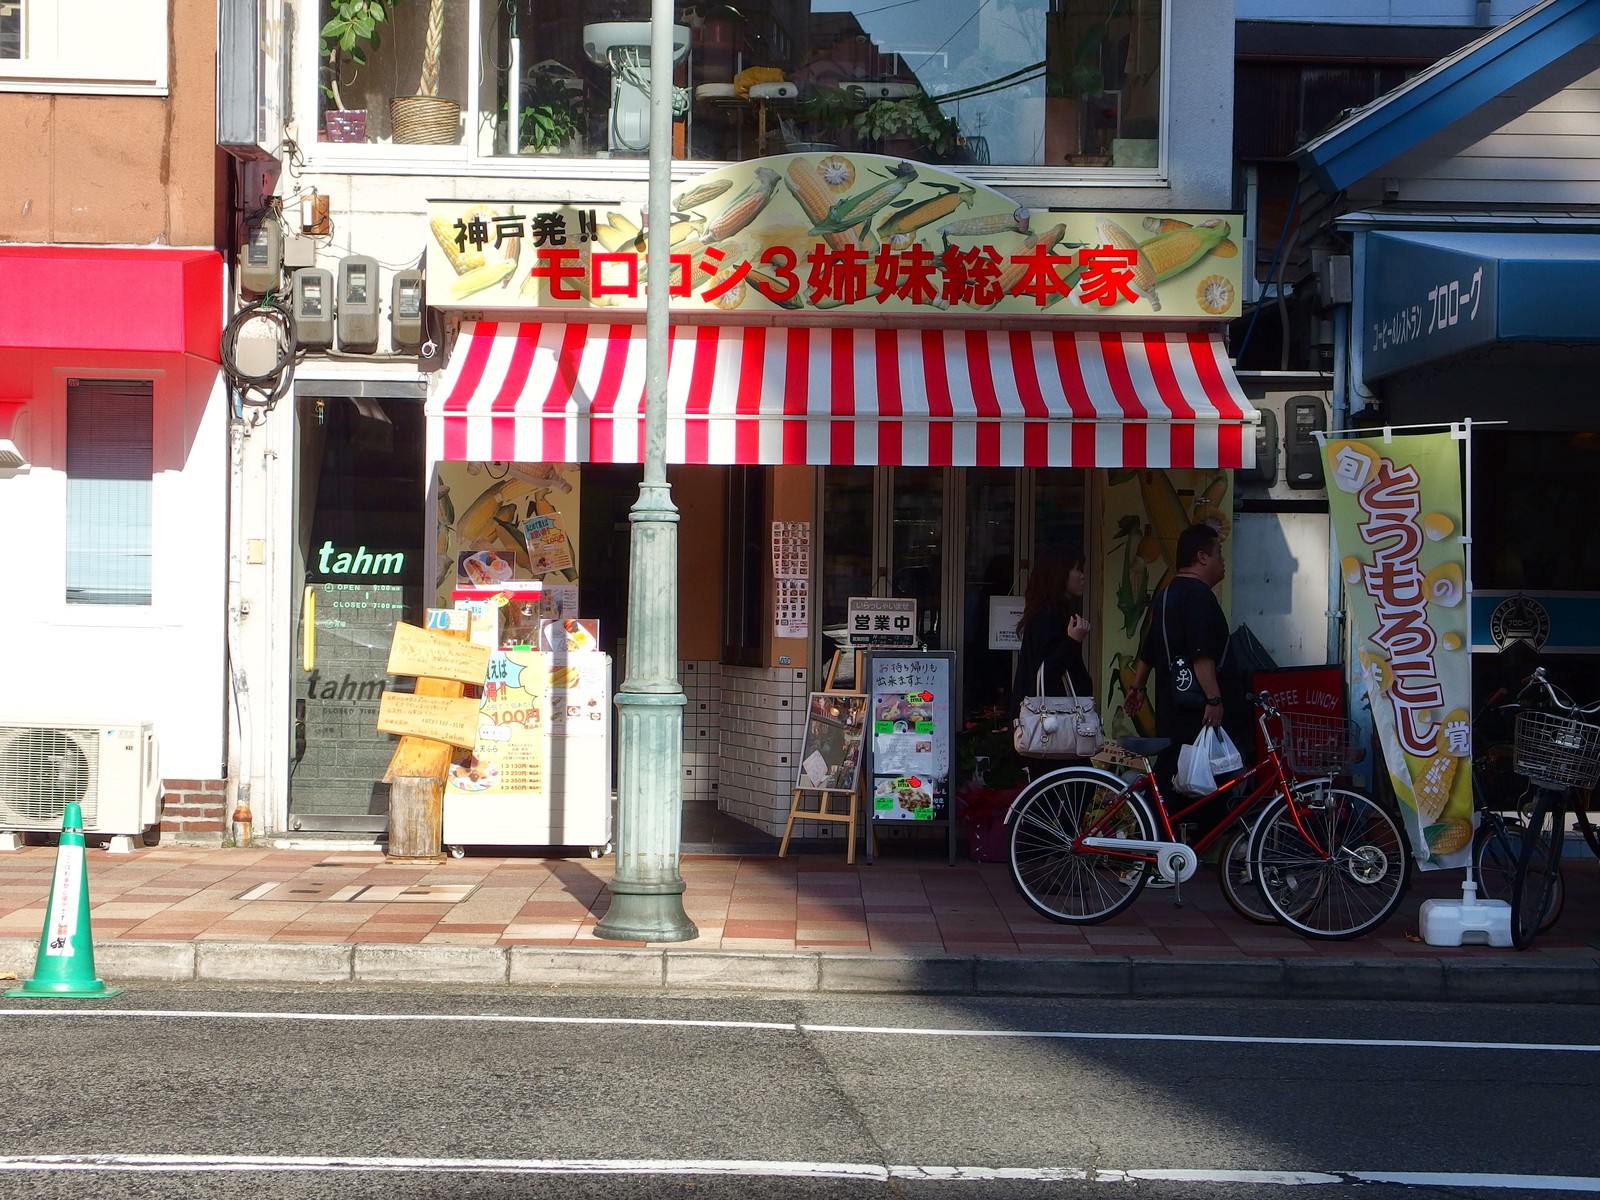 地下鉄 みなと元町駅 近くに モロコシ3姉妹総本家 ってトウモロコシ料理のお店できてる 神戸ジャーナル